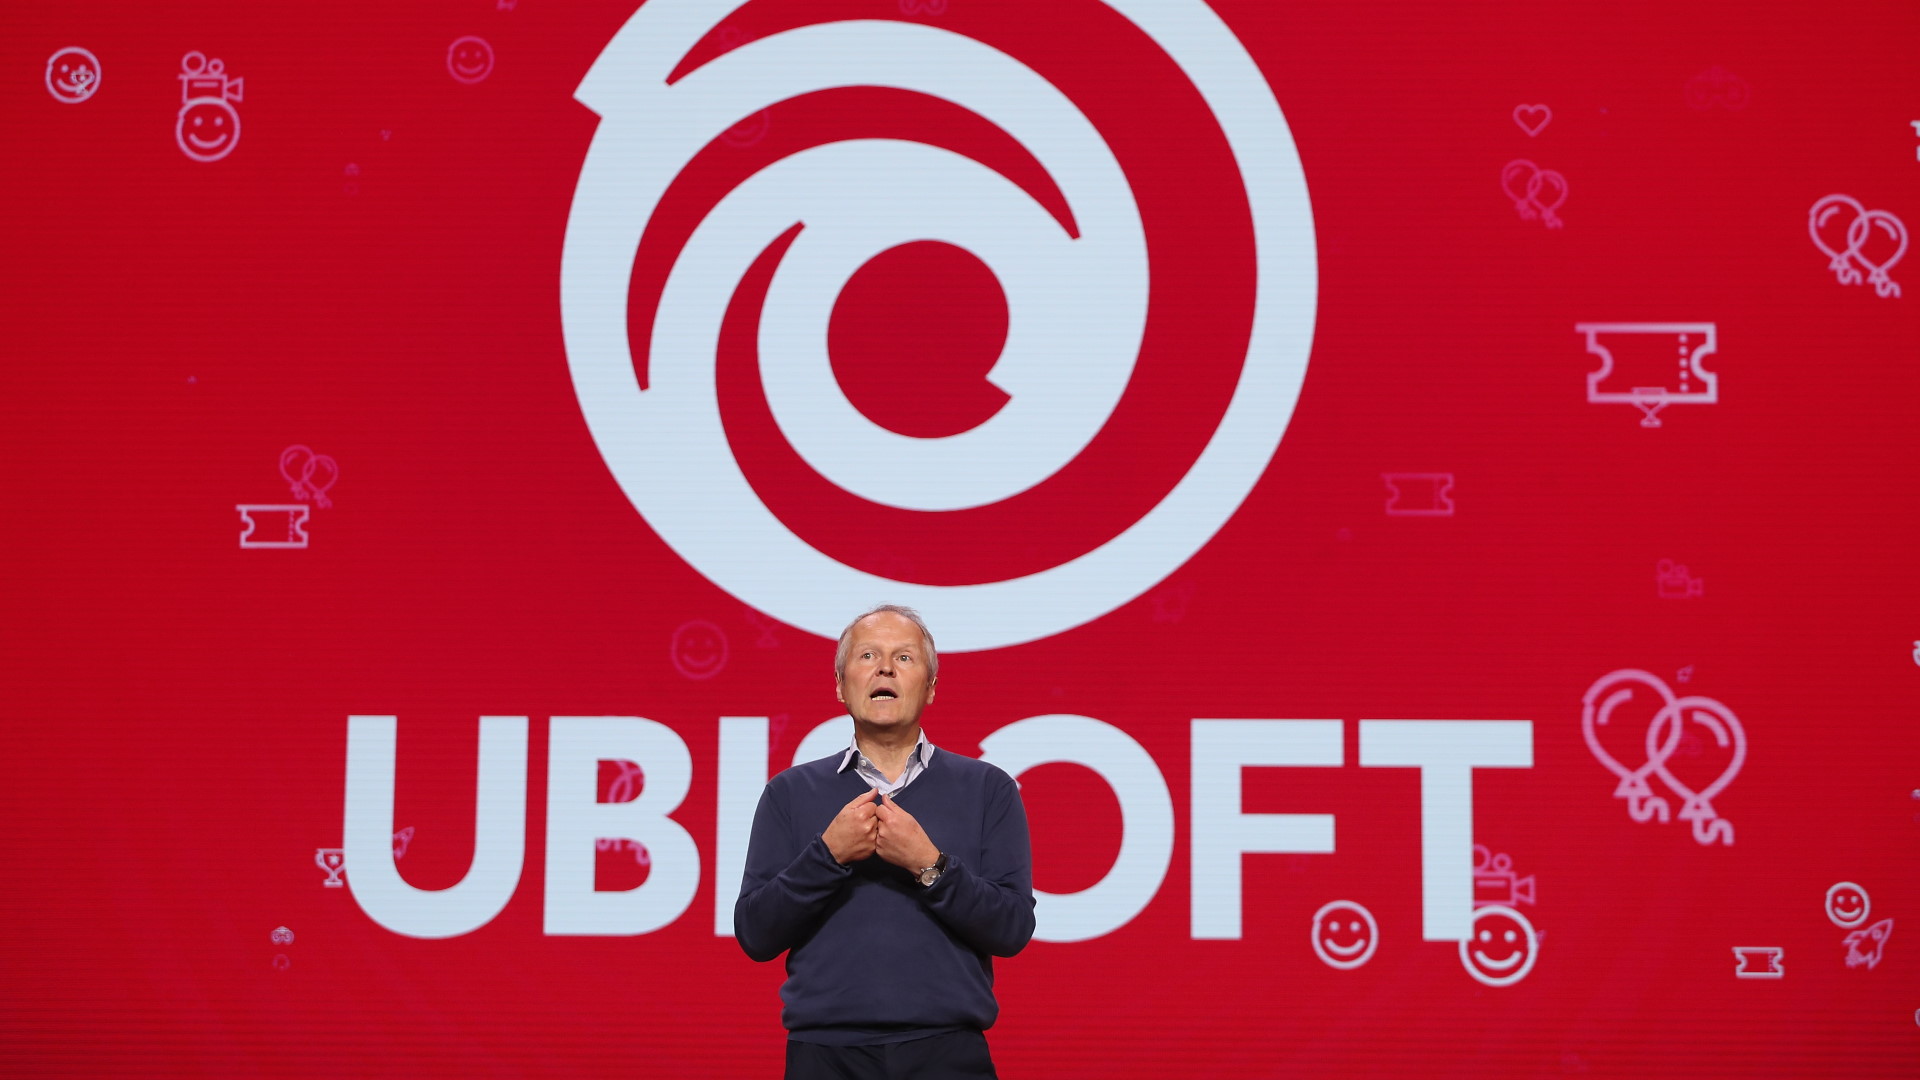 Bir yıl sonra A Better Ubisoft, işyeri kültürünü iyileştirme taleplerinin hiçbirinin karşılanmadığını söyledi